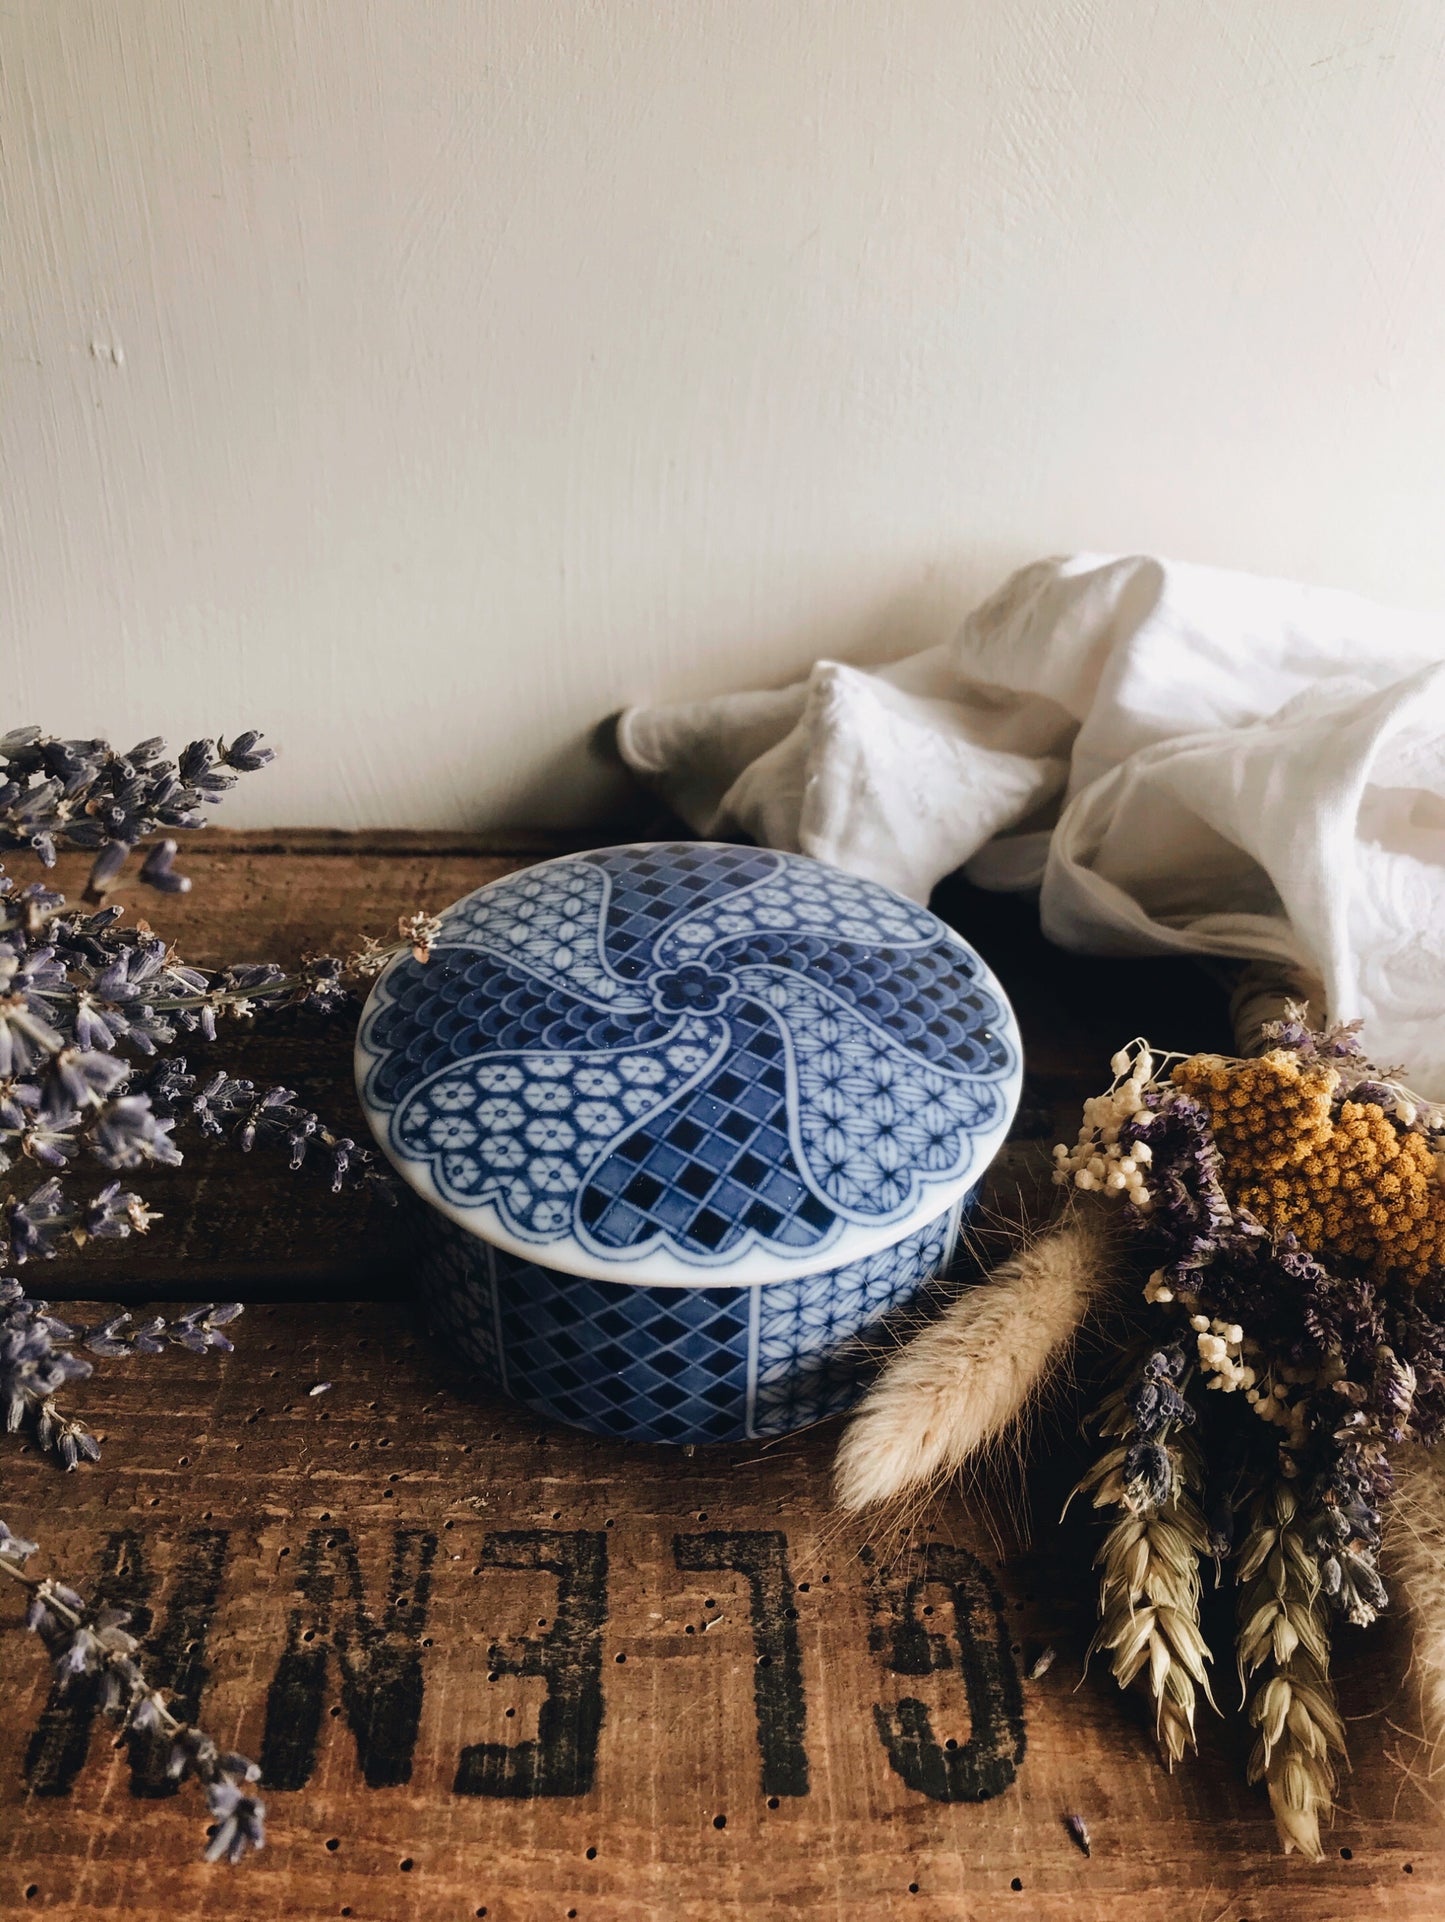 Vintag Blue & White Decorative Pot with Lid